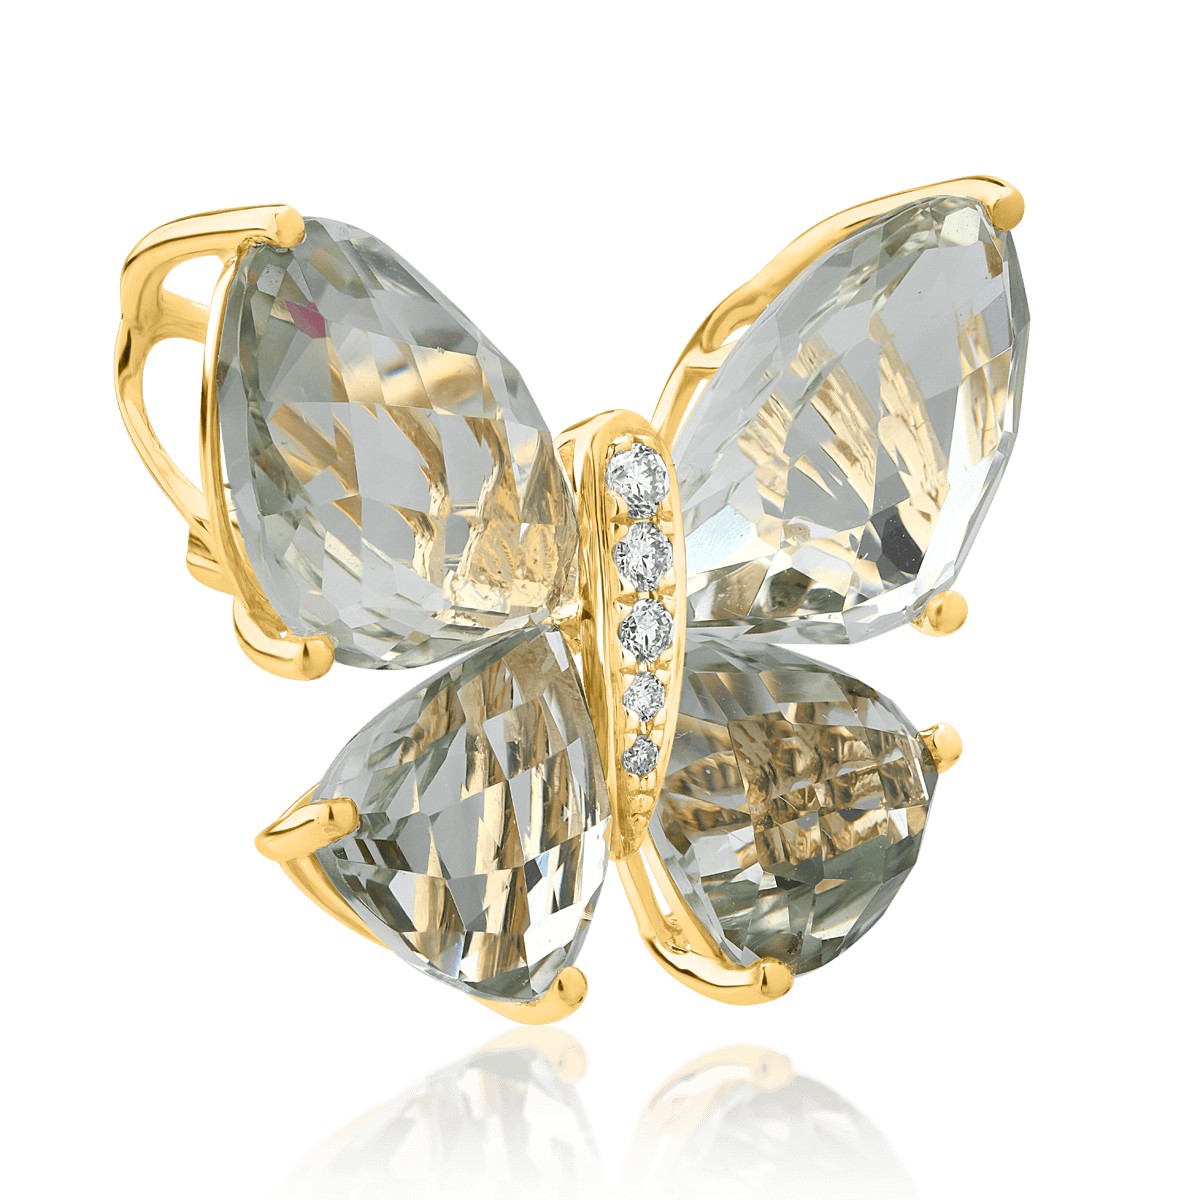 Brosa fluture din aur galben de 18K cu ametiste verzi de 11.8ct detasabile si diamante de 0.39ct